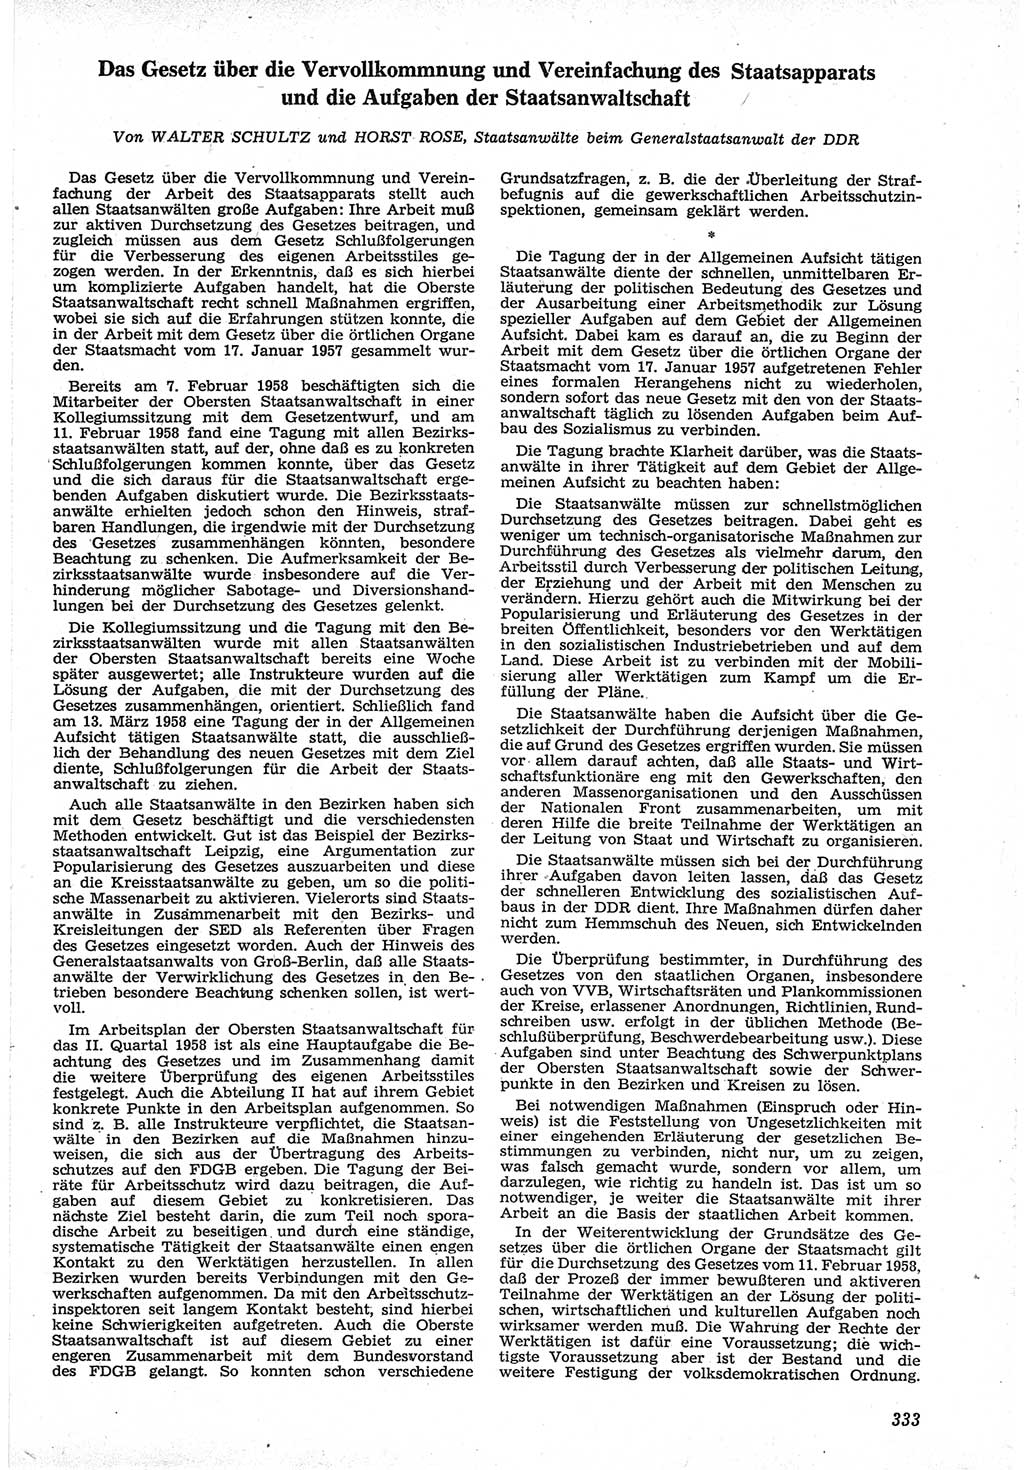 Neue Justiz (NJ), Zeitschrift für Recht und Rechtswissenschaft [Deutsche Demokratische Republik (DDR)], 12. Jahrgang 1958, Seite 333 (NJ DDR 1958, S. 333)